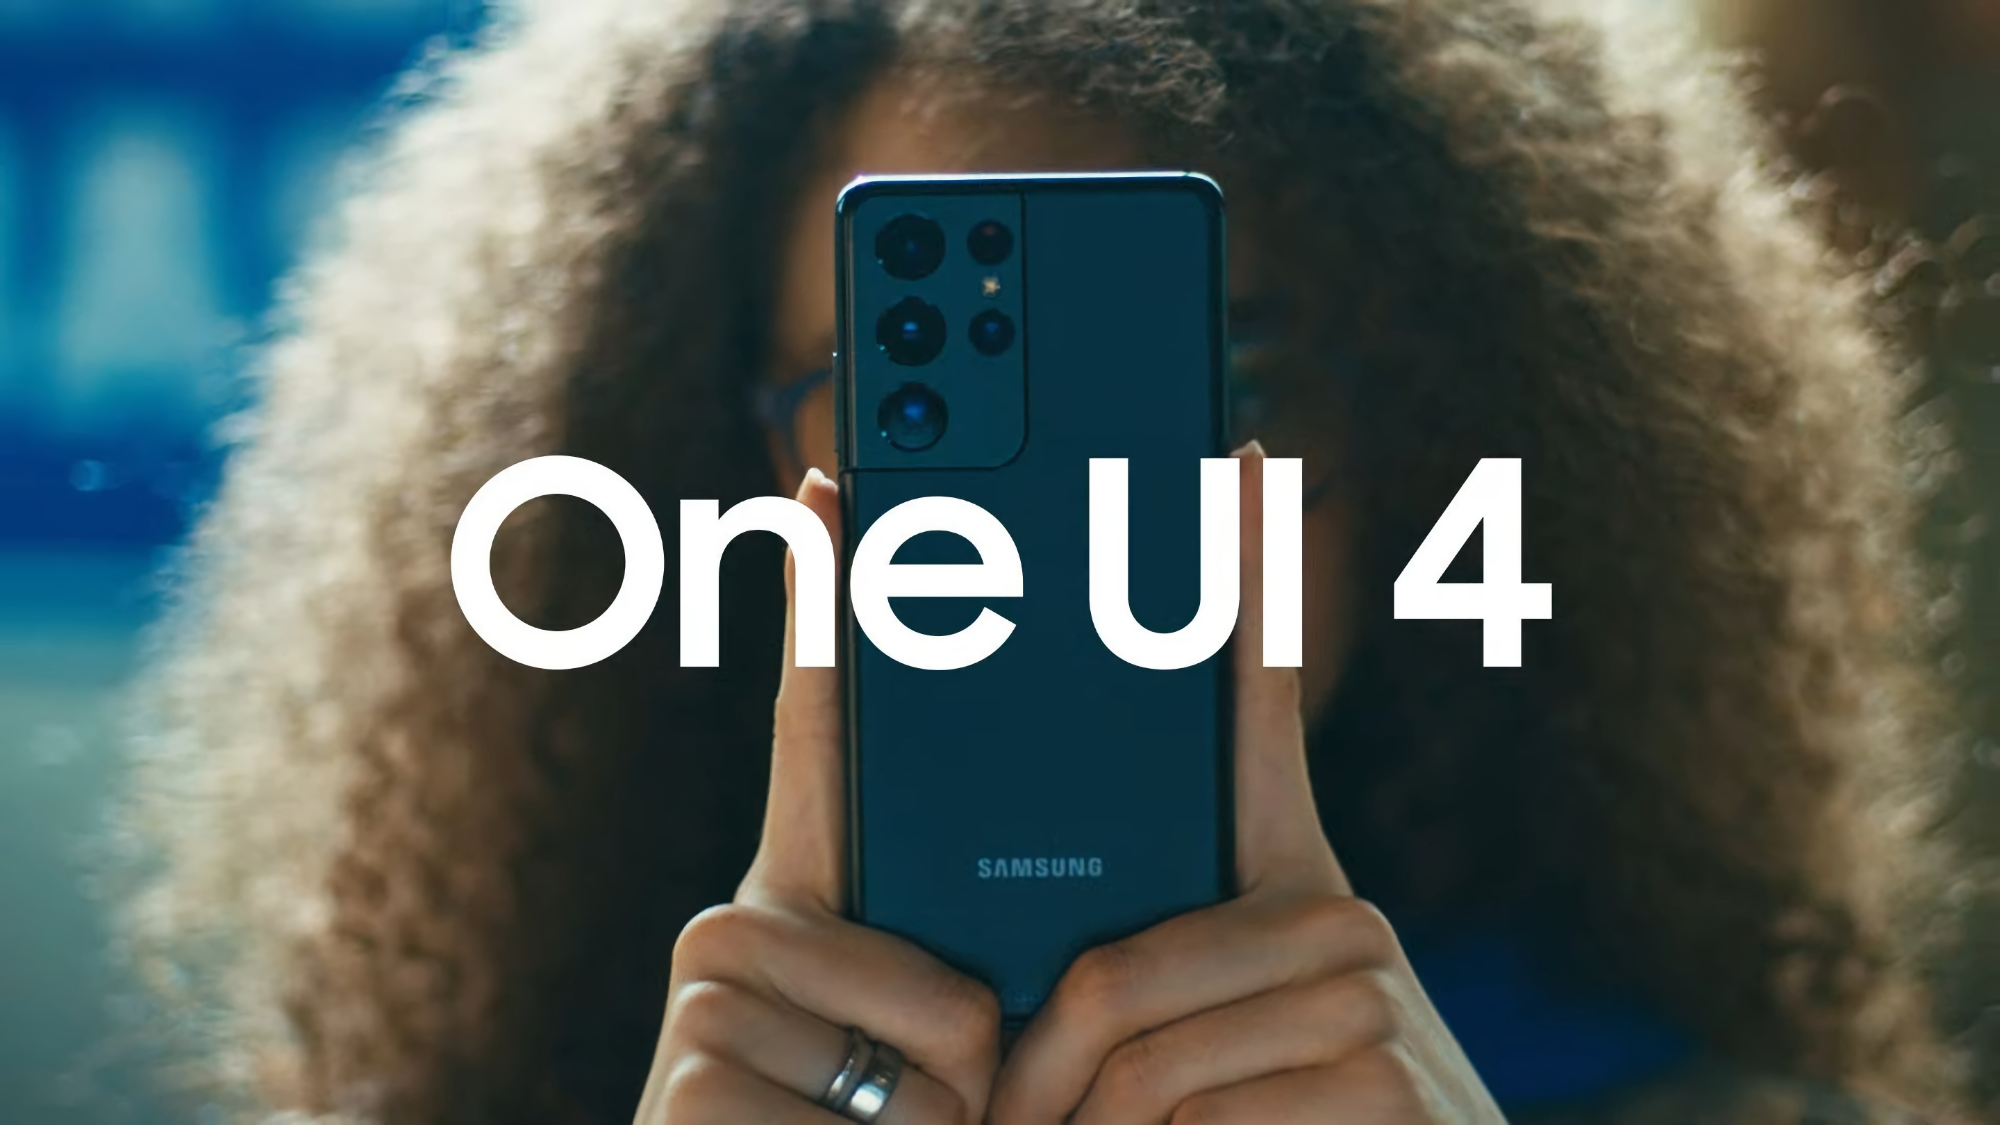 Samsung випустила третю бета-версію One UI 4 для Galaxy S21 з видаленою рекламою, новою анімацією та додатком «Погода»